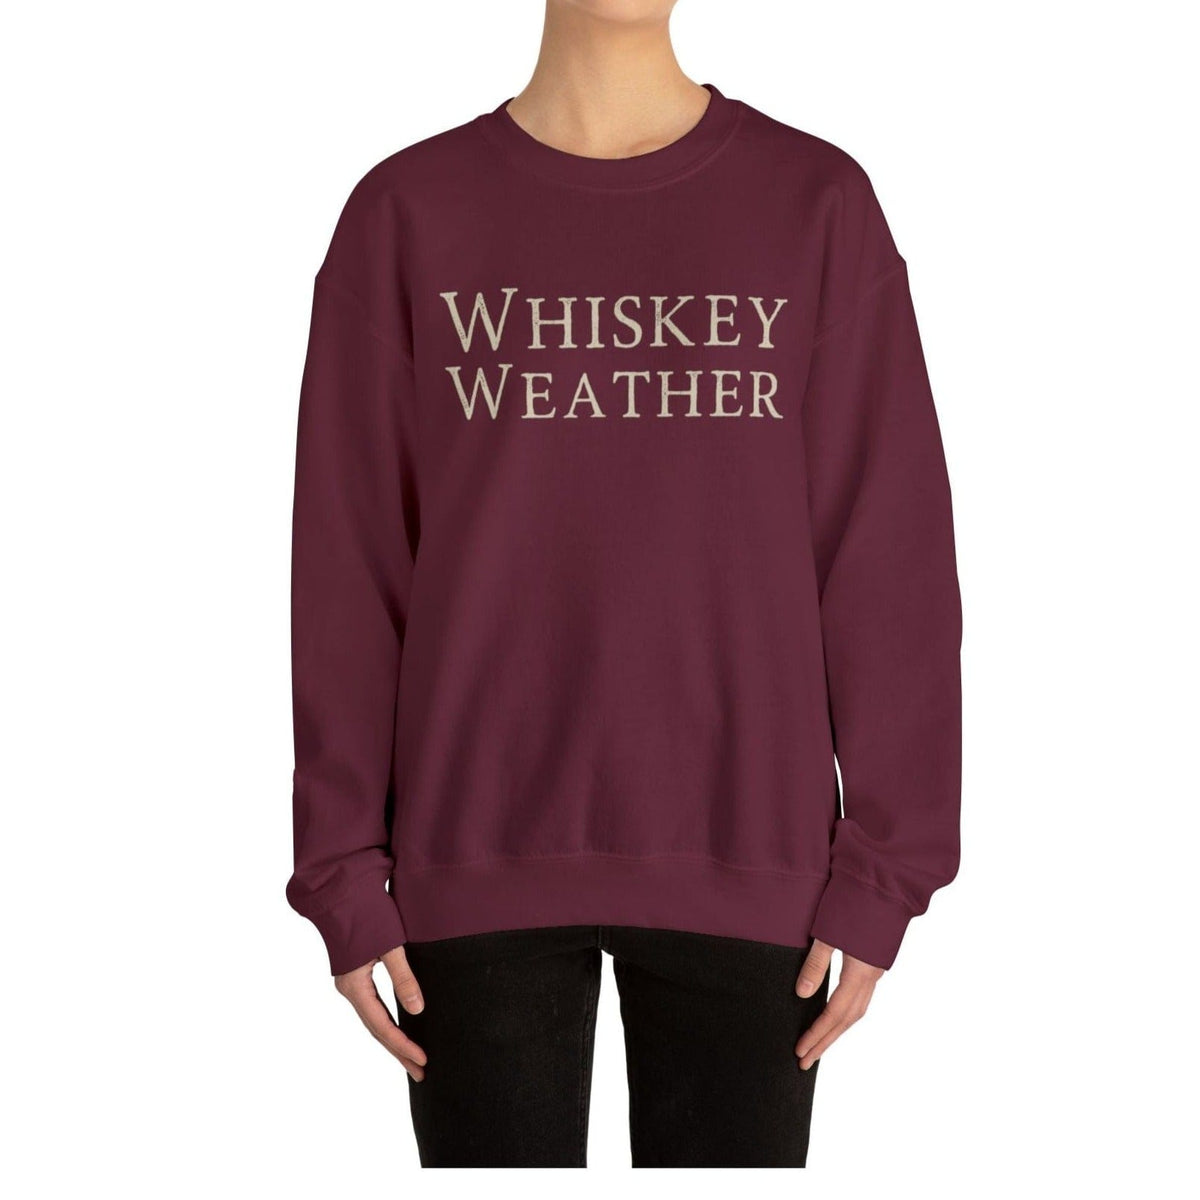 Whiskey Sweatshirt | Whiskey Weather Crewneck | Drinking Sweatshirt Sweatshirt TheFringeCultureCollective